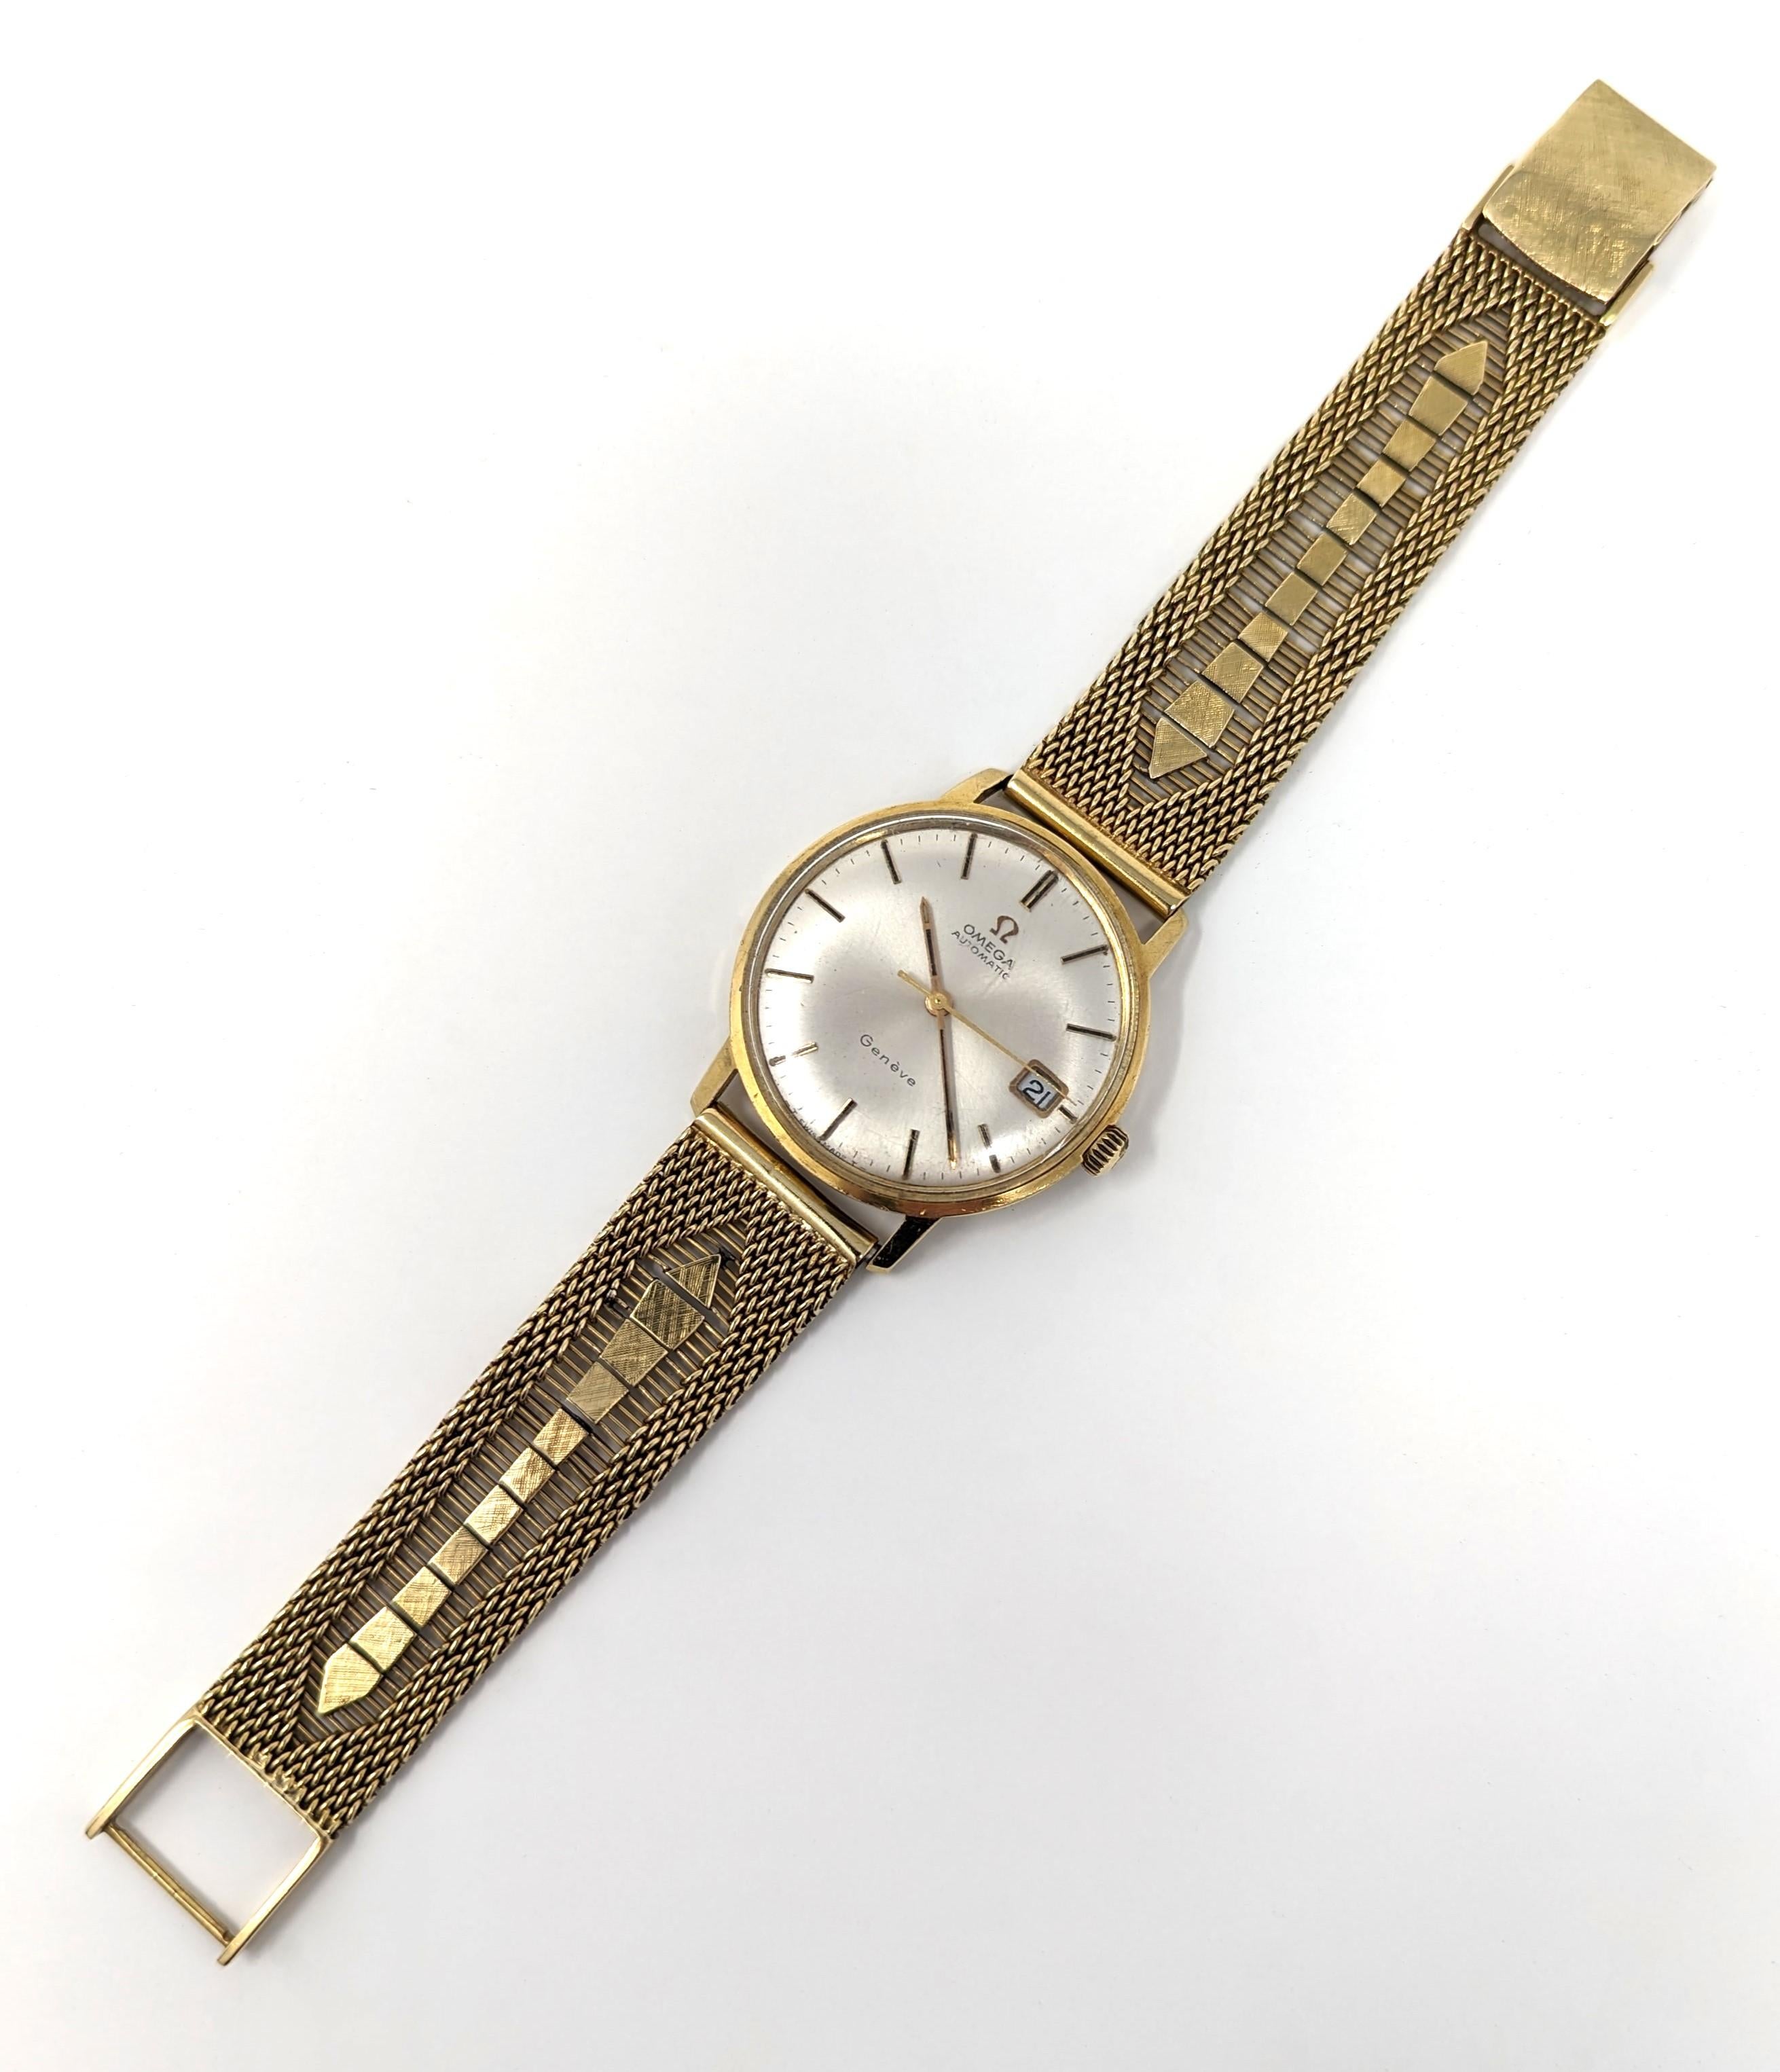 Superb Vintage Omega Automatic Uhr, Geneve Swiss Made mit einem atemberaubenden 18k massivem Gelbgold Mesh-Band. Das große Zifferblatt misst 1,3 Zoll im Durchmesser (einschließlich Lünette) und 10 mm in der Tiefe. Misst insgesamt 7,5 Zoll von einem